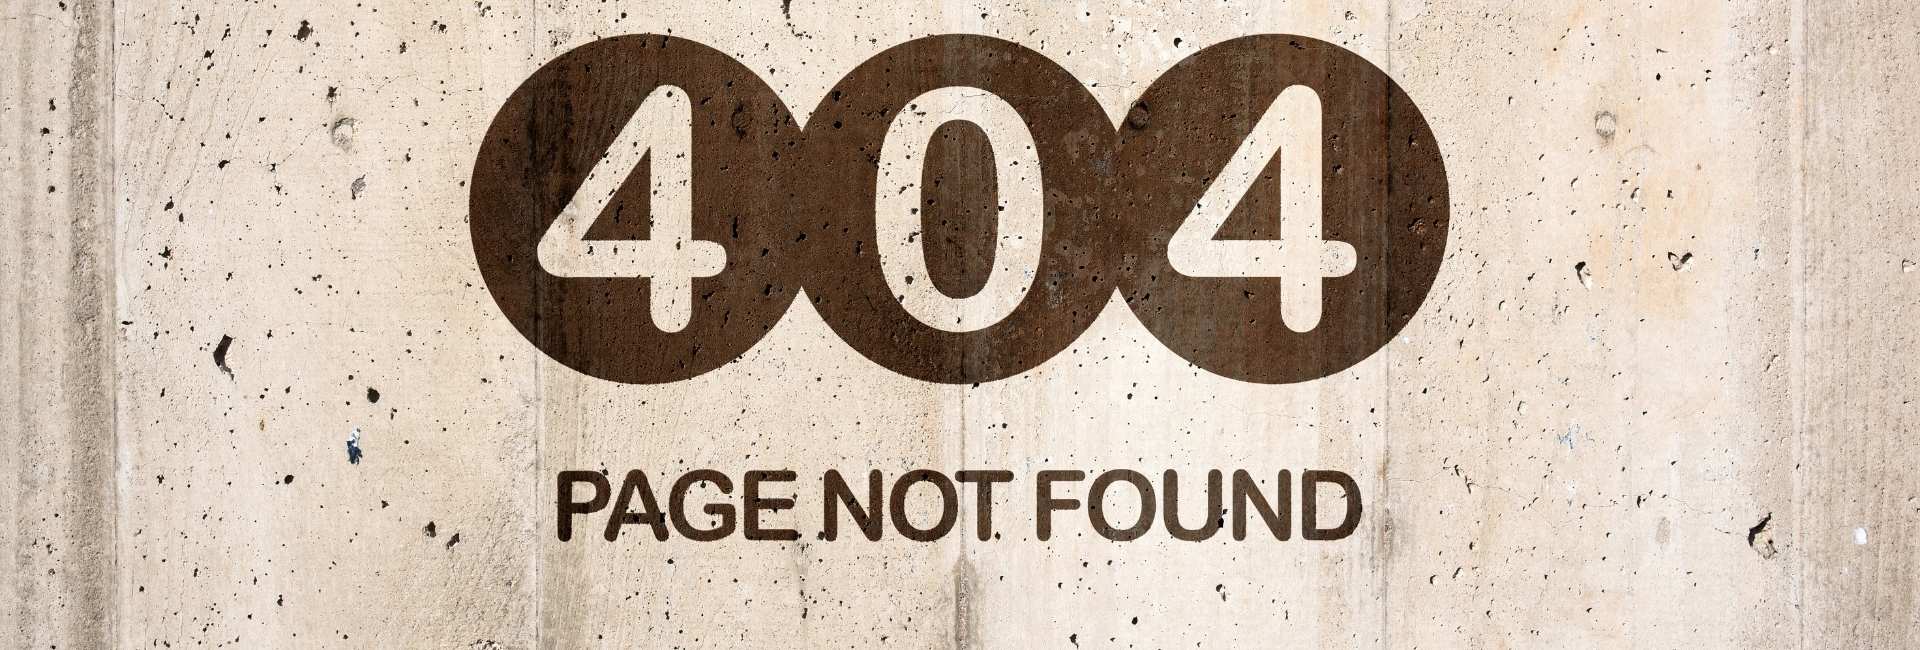 Derfor skal du lave din egen 404-side - blog